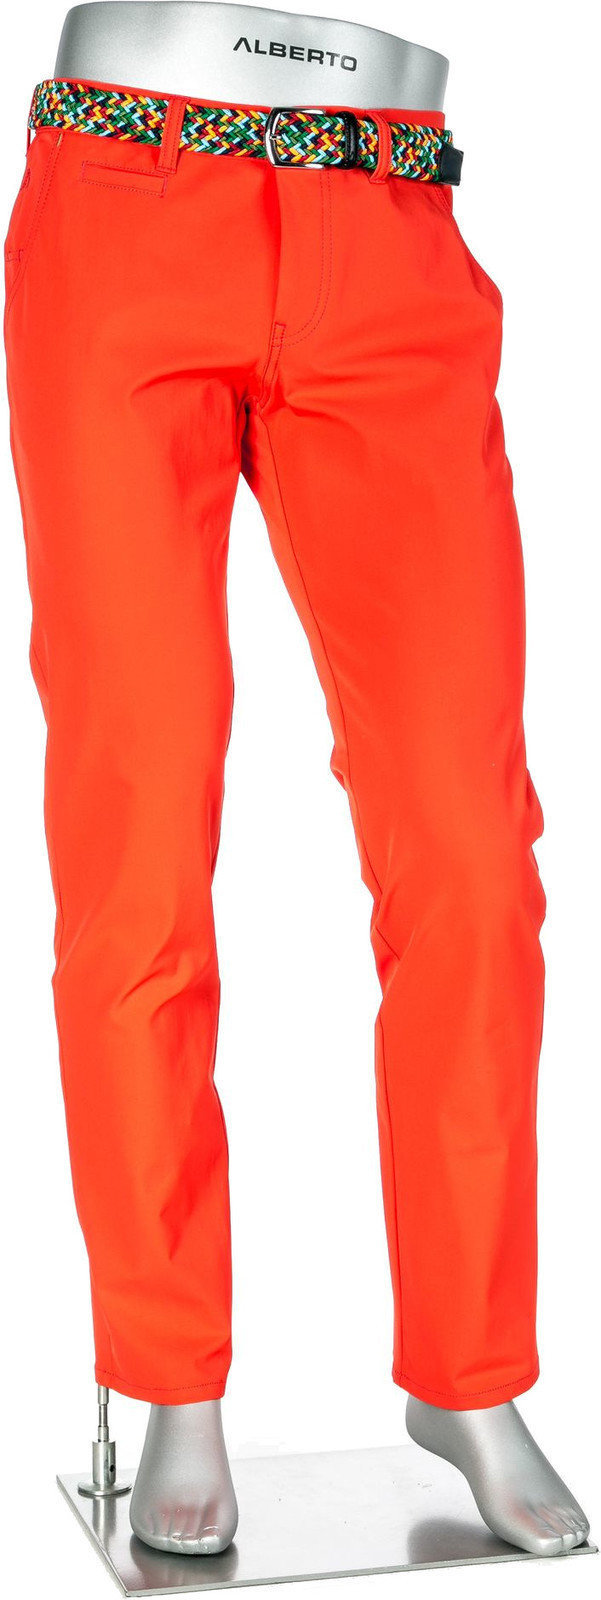 Παντελόνια Alberto Rookie 3xDRY Cooler Mens Trousers Orange 46